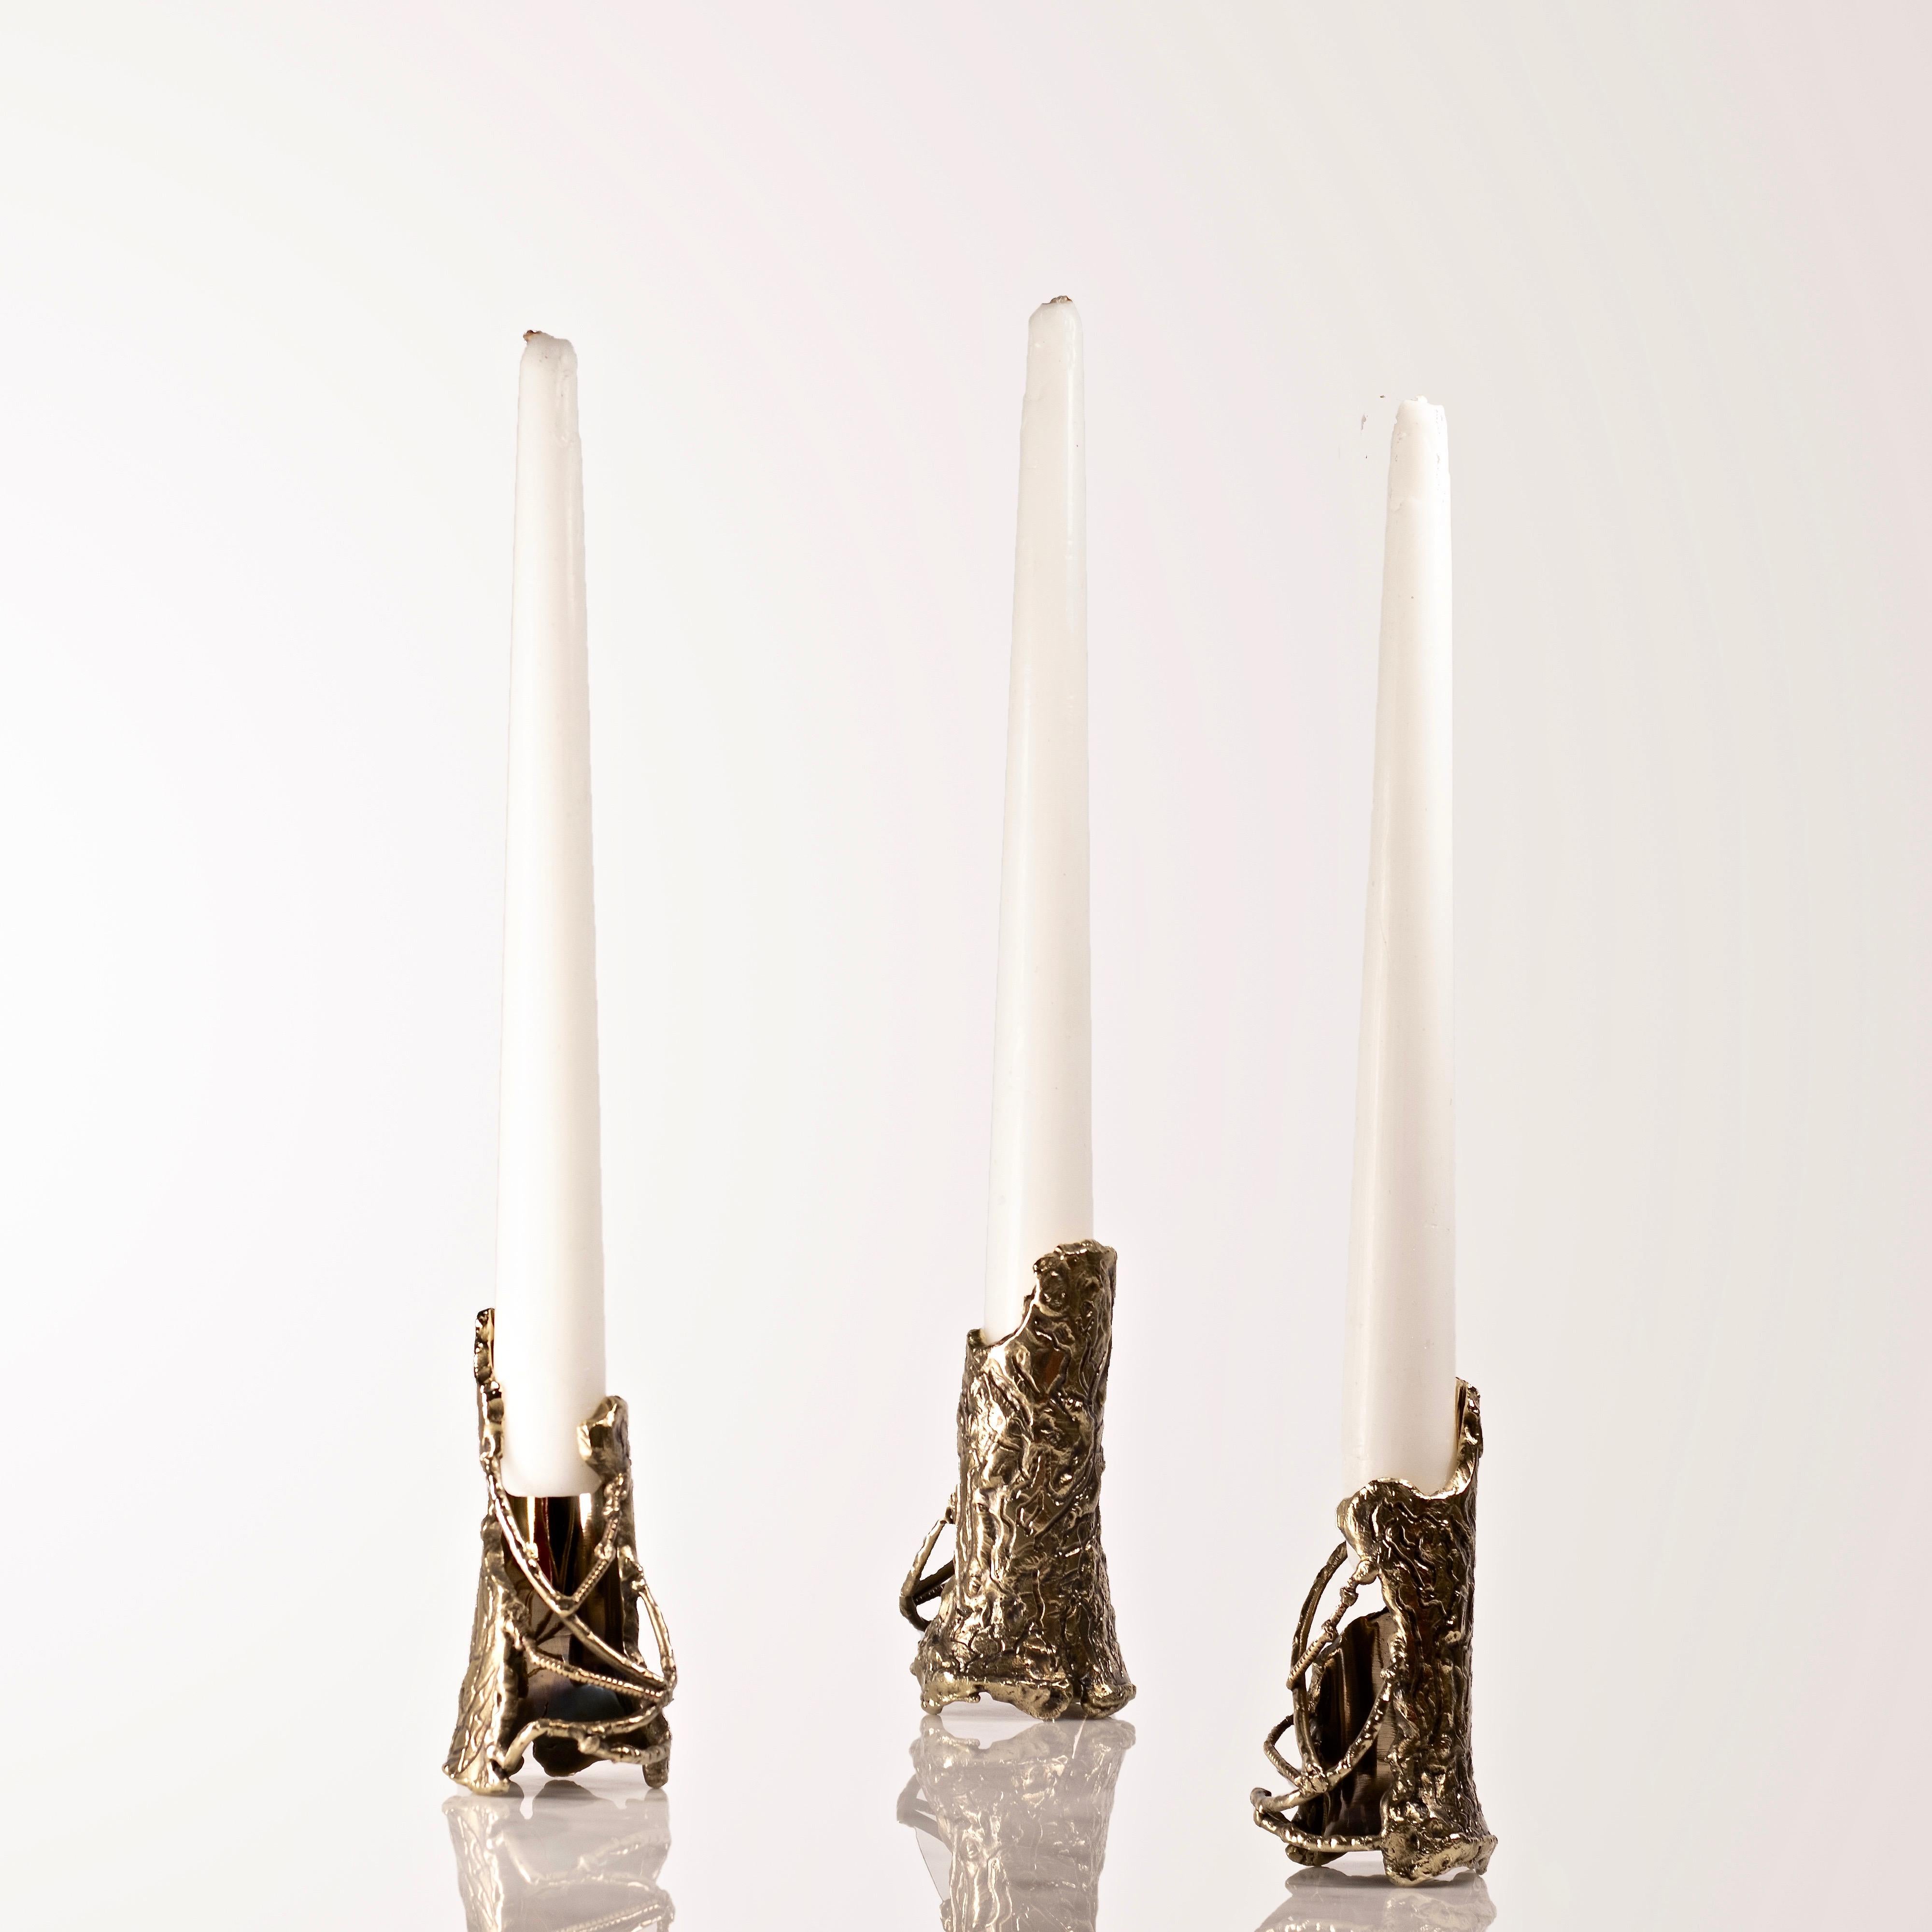 Ensemble von handgeformten Kerzenhaltern aus Messing von Samuel Costantini.
Die drei Kerzenhalter wurden vollständig von der Künstlerin handgefertigt.
Auflage von 21+ 3 ap.
Maße: Durchmesser 50 mm, Höhe 100 mm.
Durchmesser 1,9681 Zoll, Höhe